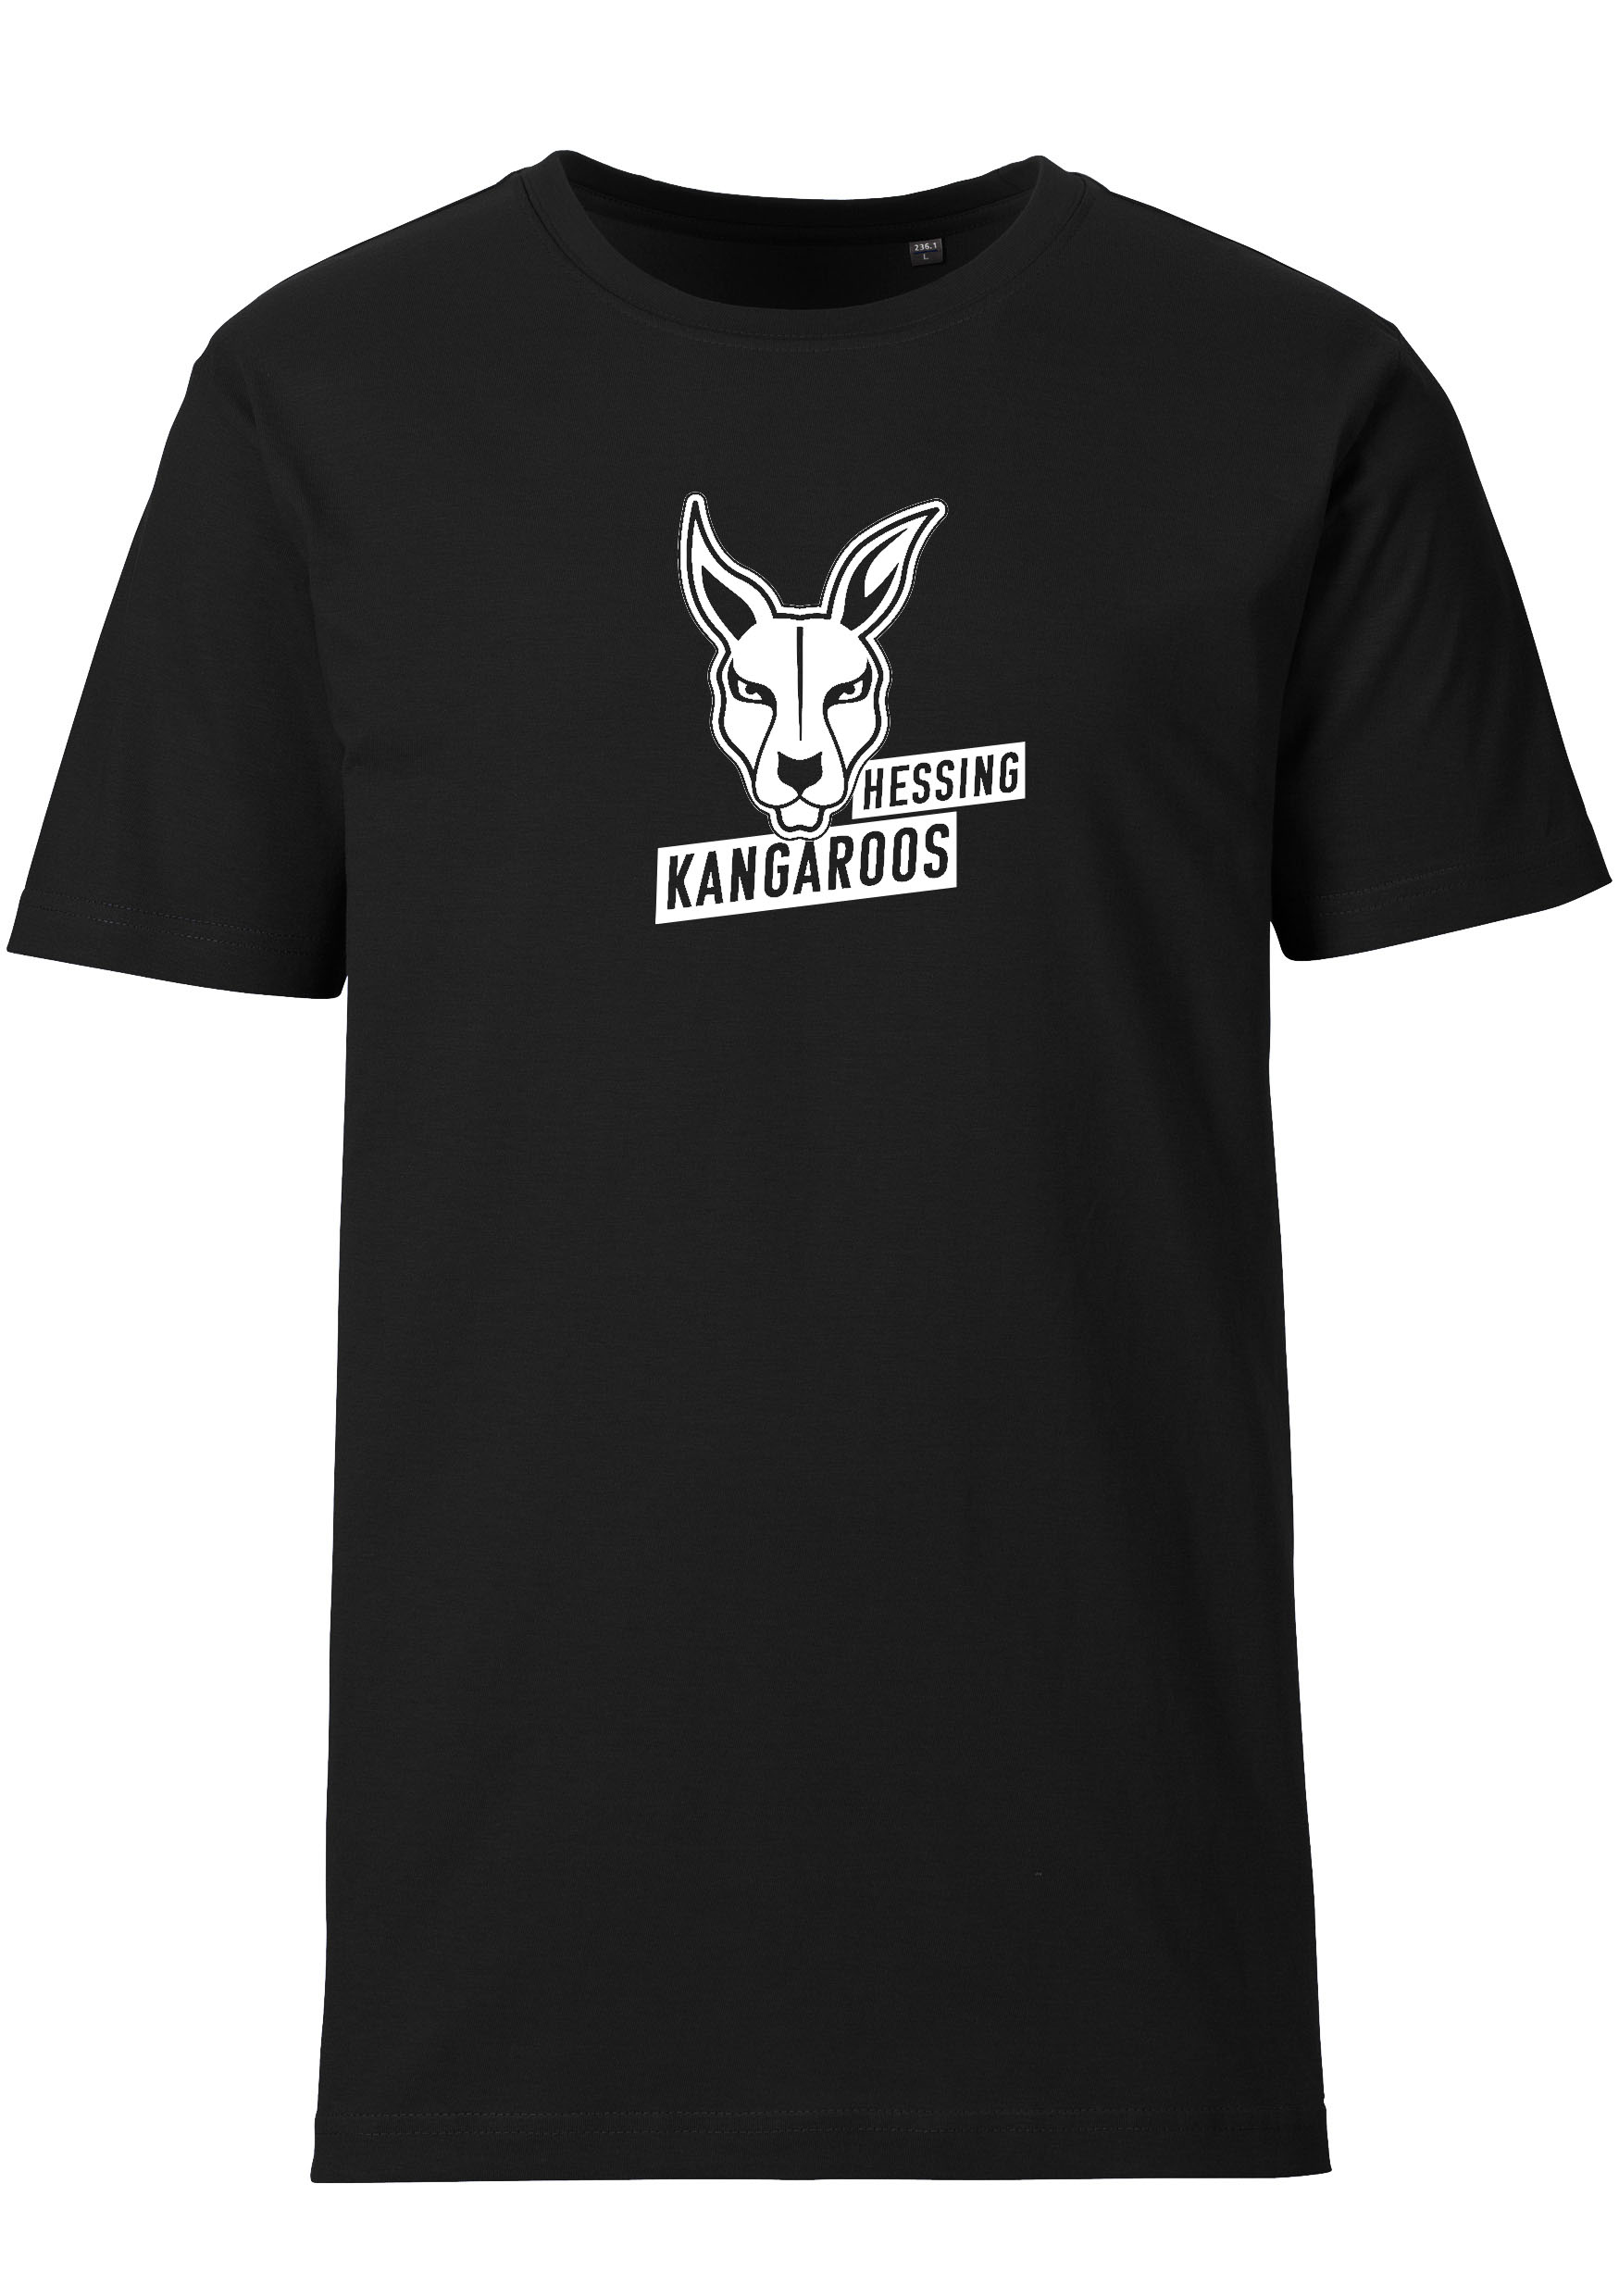 Hessing Kangaroos Kinder T-Shirt